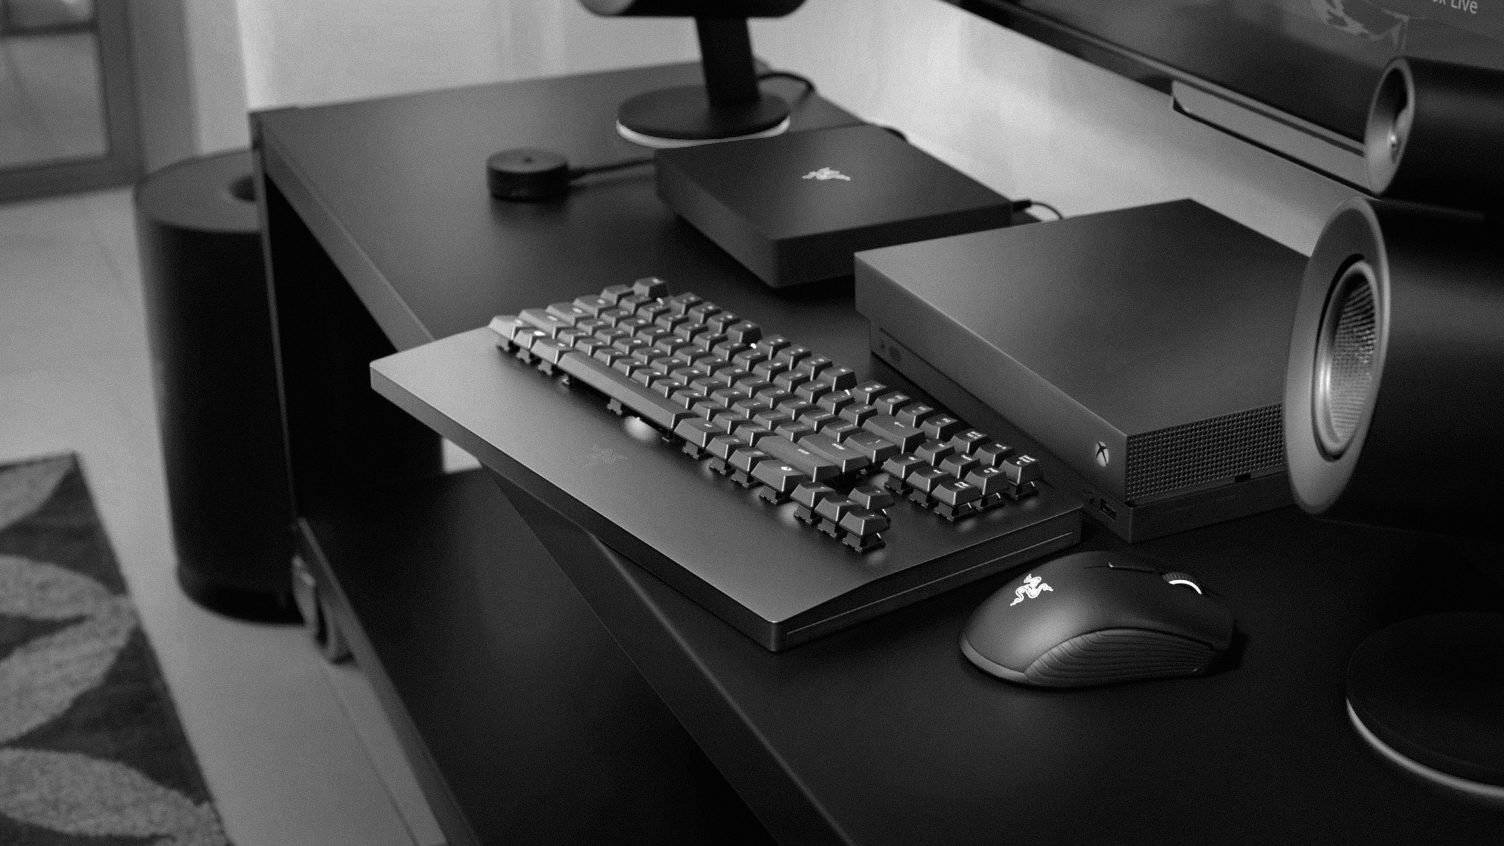 Foto van het Razer Turret-toetsenbord en bijbehorende muis, aangesloten op een Xbox One X-console.